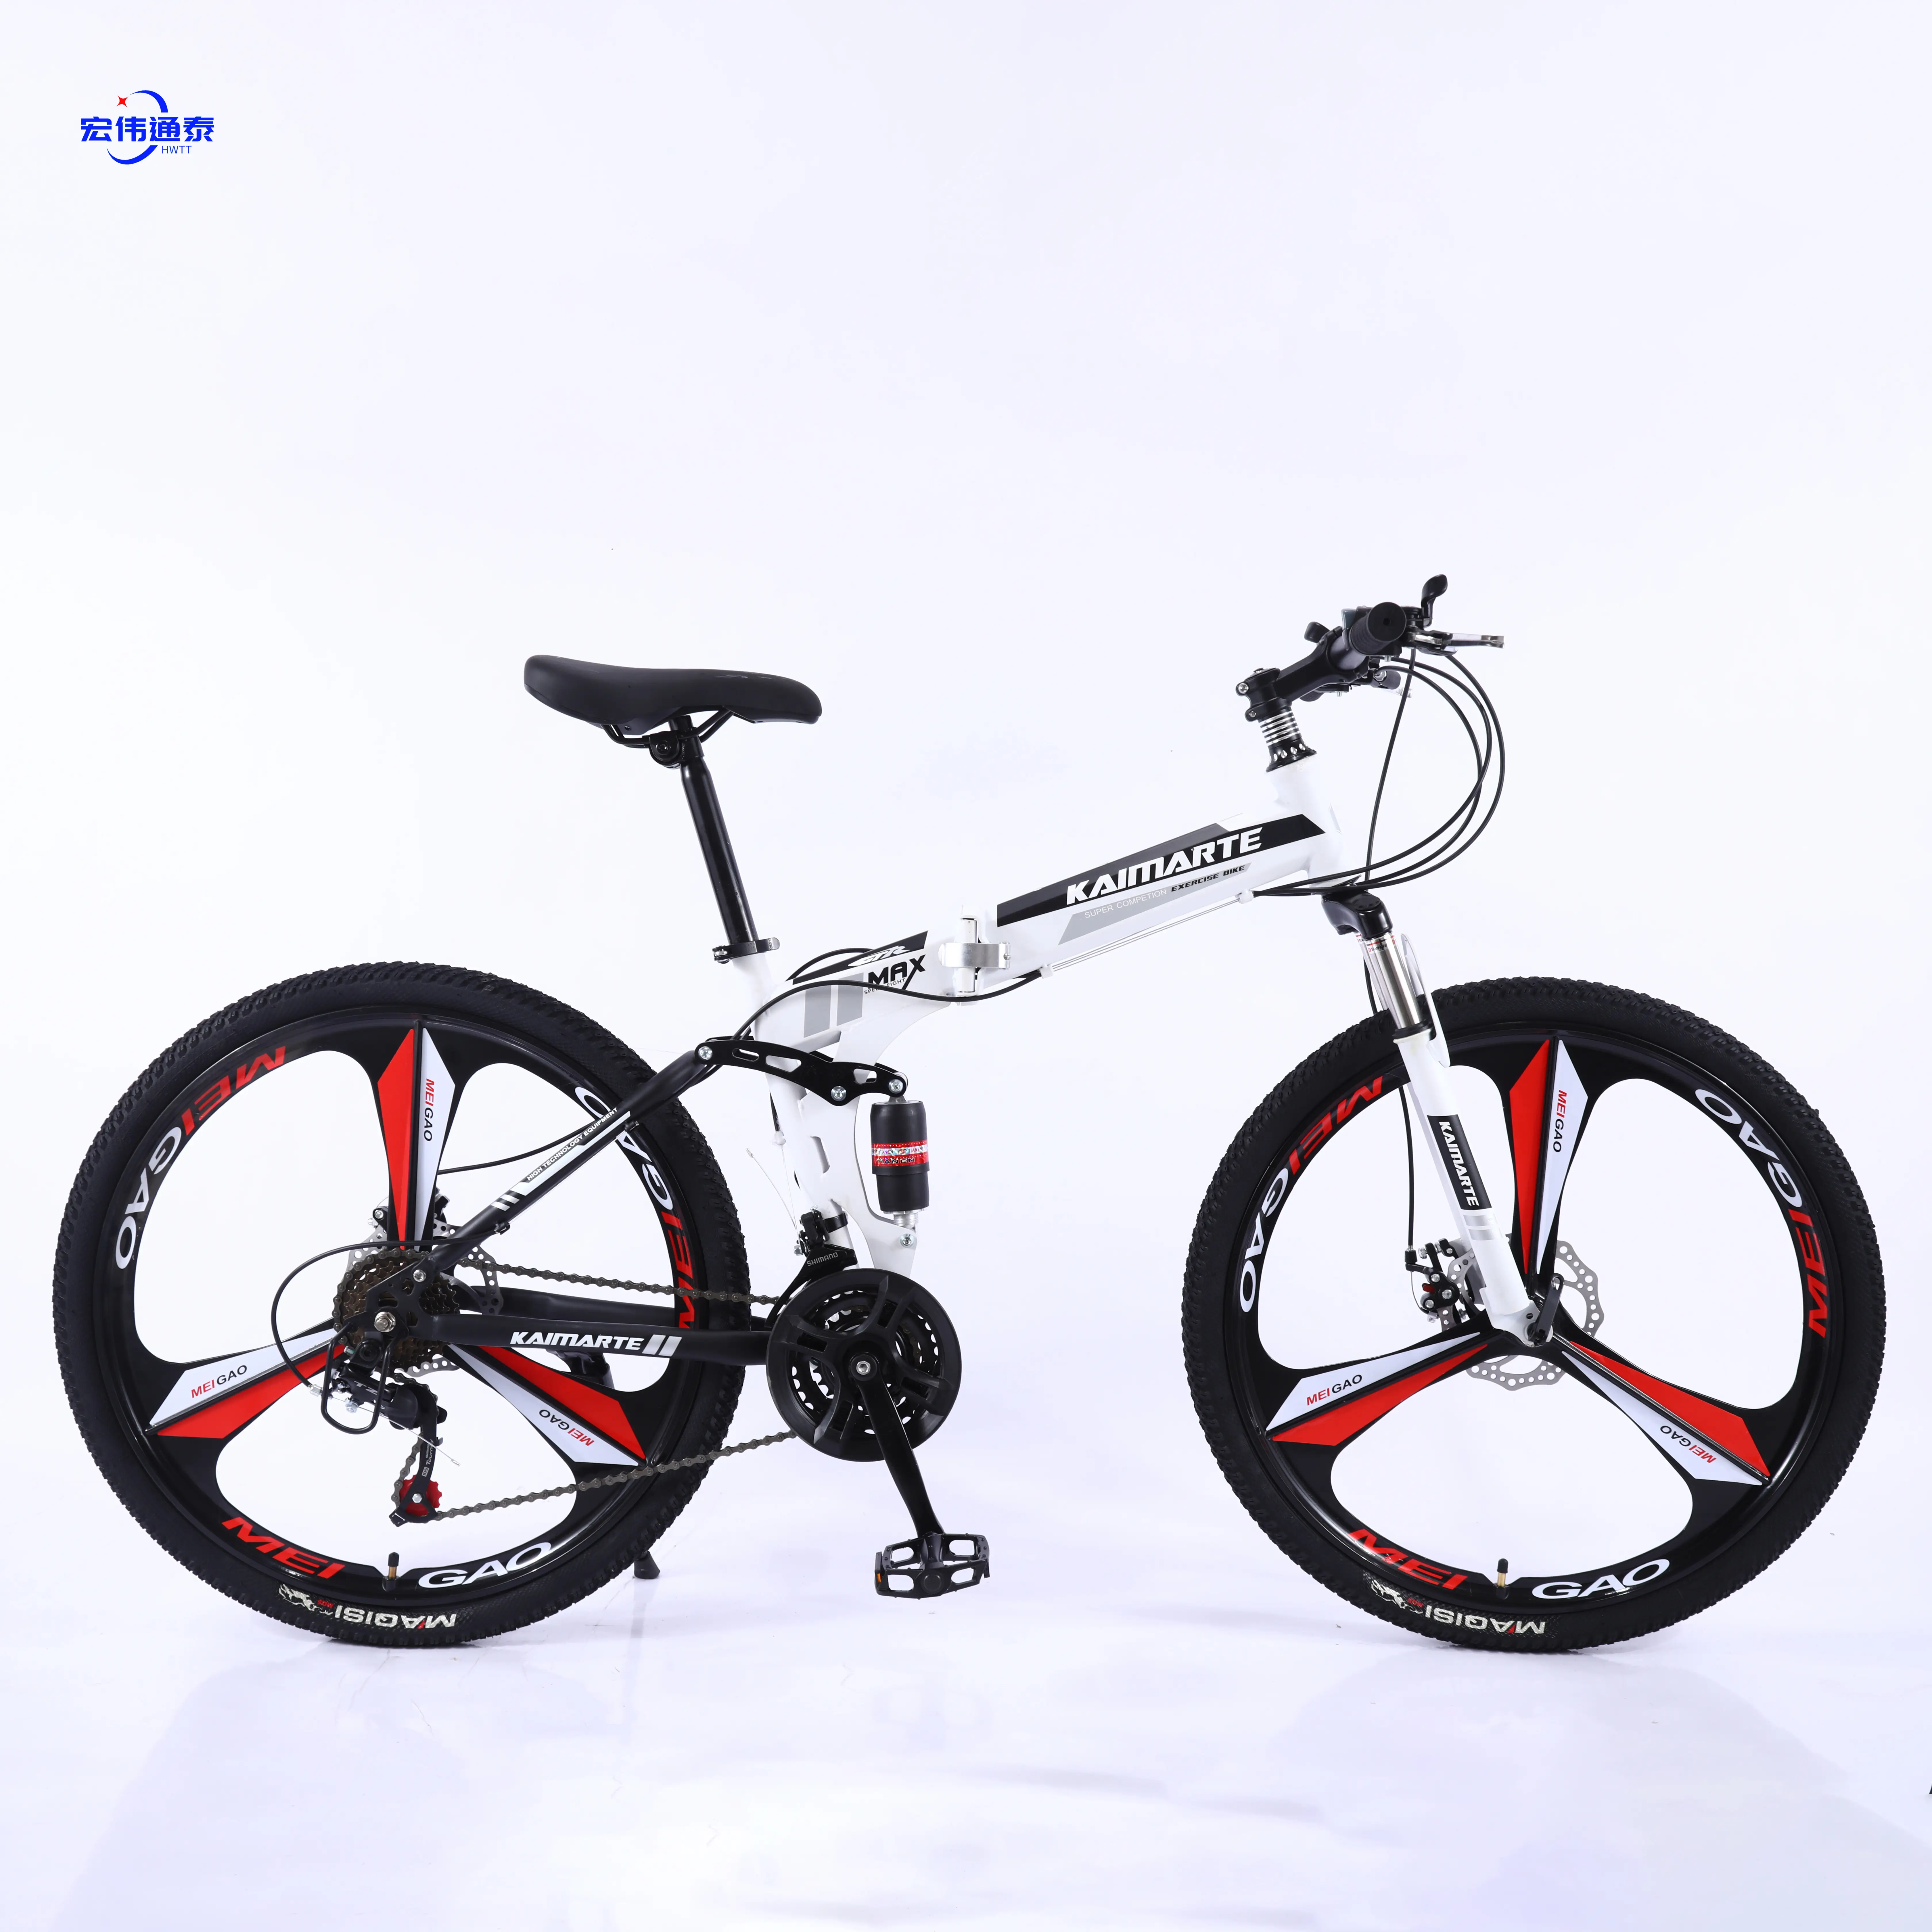 24 26 27, 5 29 pulgadas bicicleta de carreras bicicletas de carretera/bicicleta de montaña plegable barata con buena calidad fácil de plegar/aleación fácil de llevar